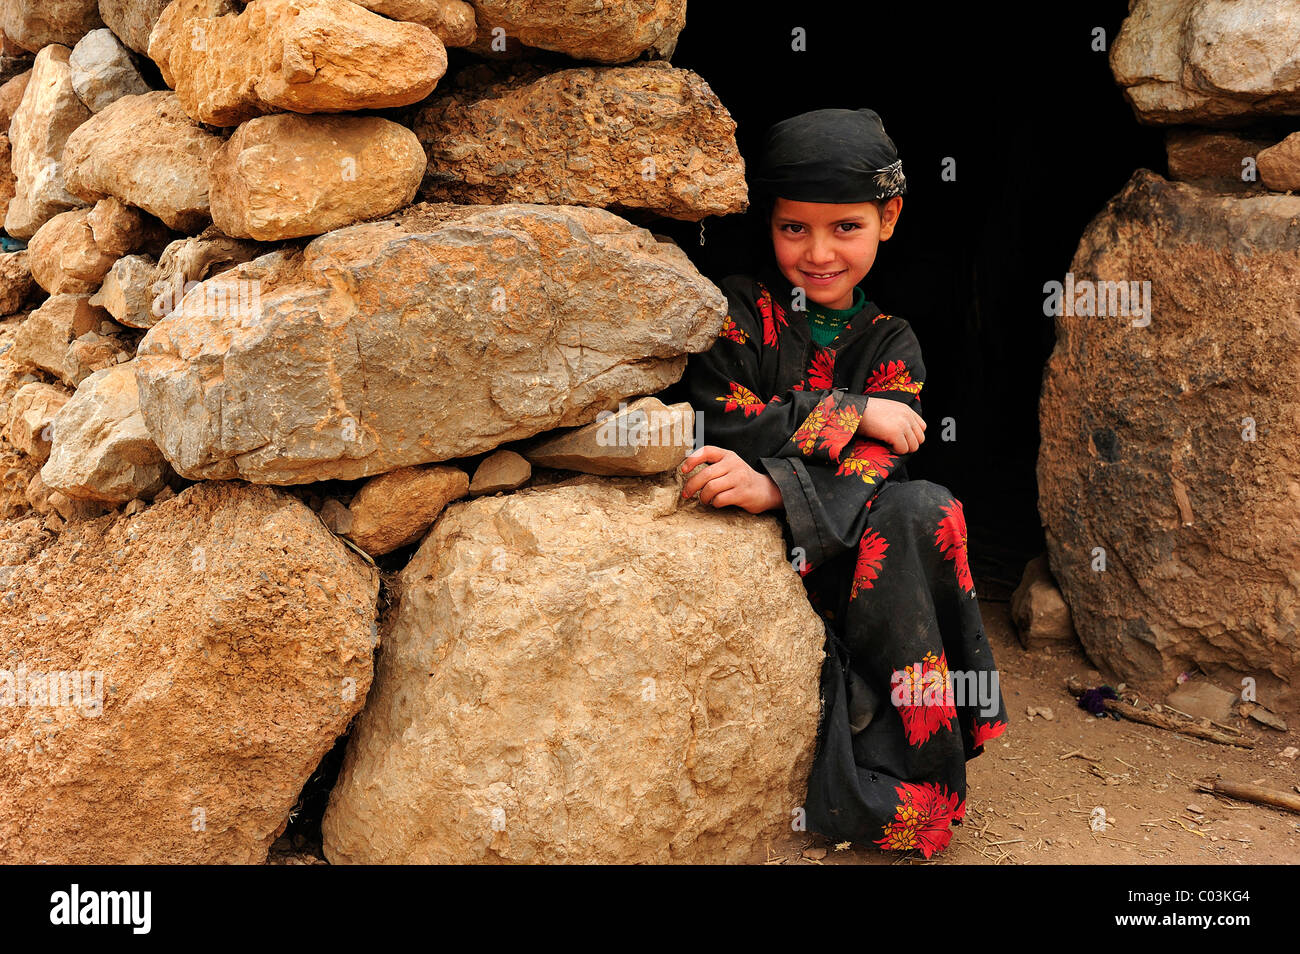 Petite fille berbère d'une famille de nomades à l'entrée d'une maison, Kelaa M'gouna, Haut Atlas, Maroc, Afrique Banque D'Images